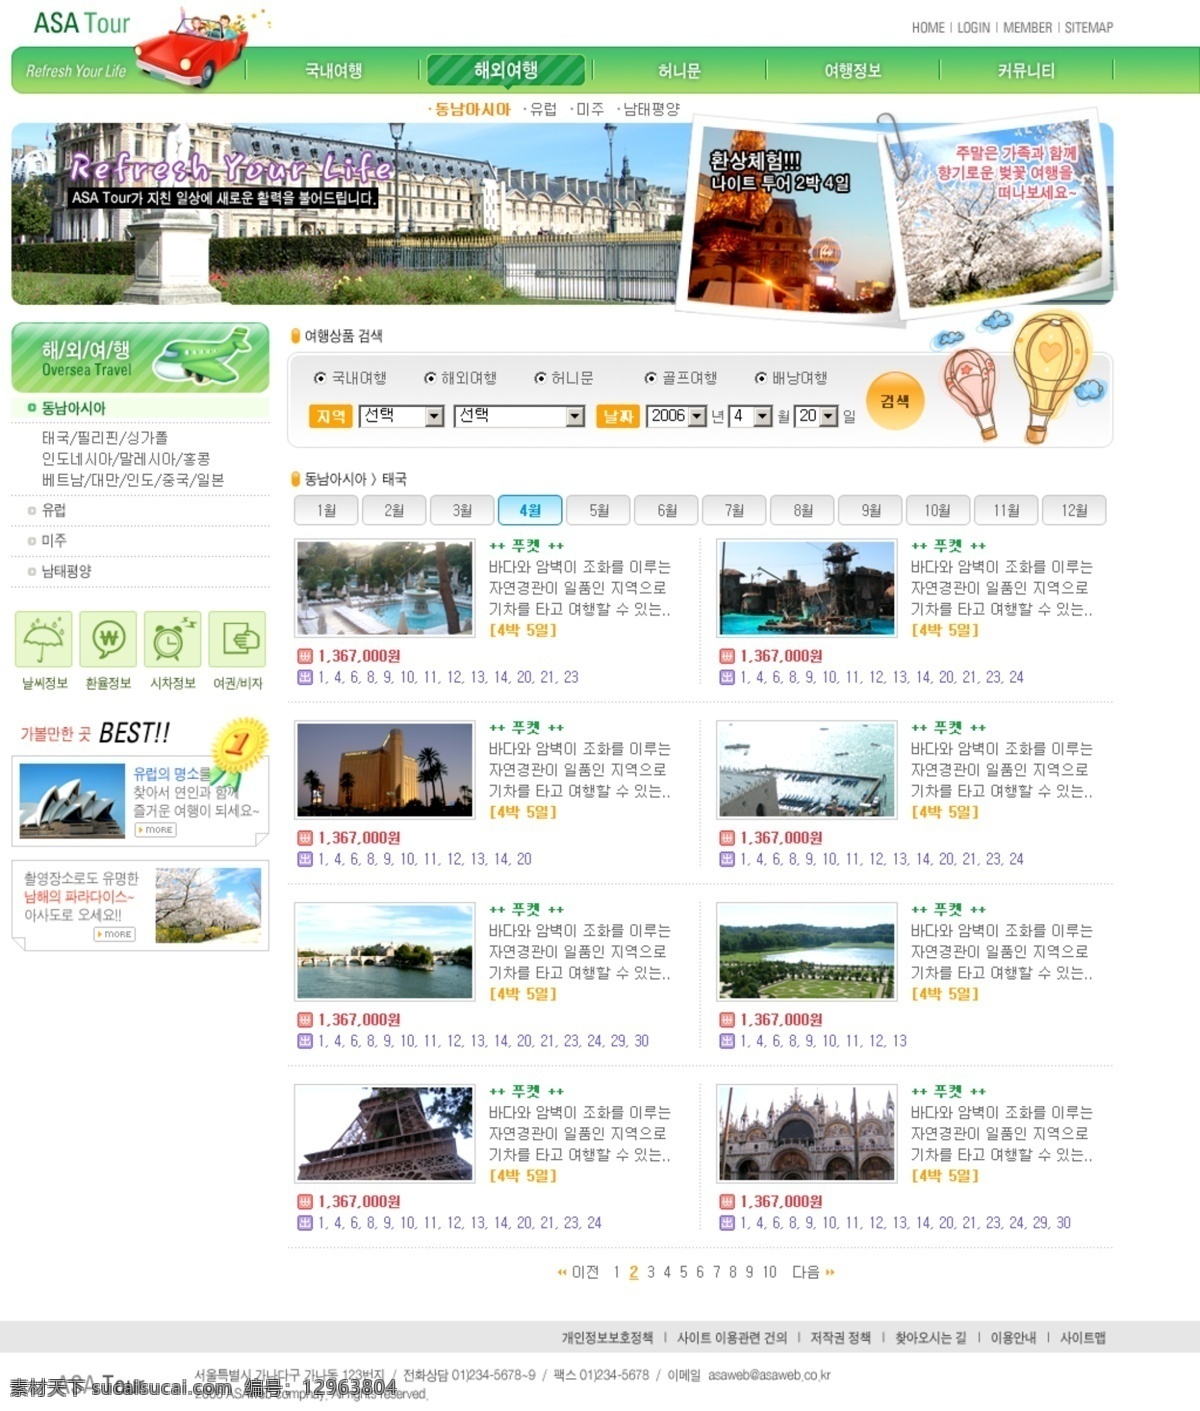 韩国 韩国模板 界面 旅游 旅游网页模板 网页模板 模板下载 模板 网页 源文件库 网页素材